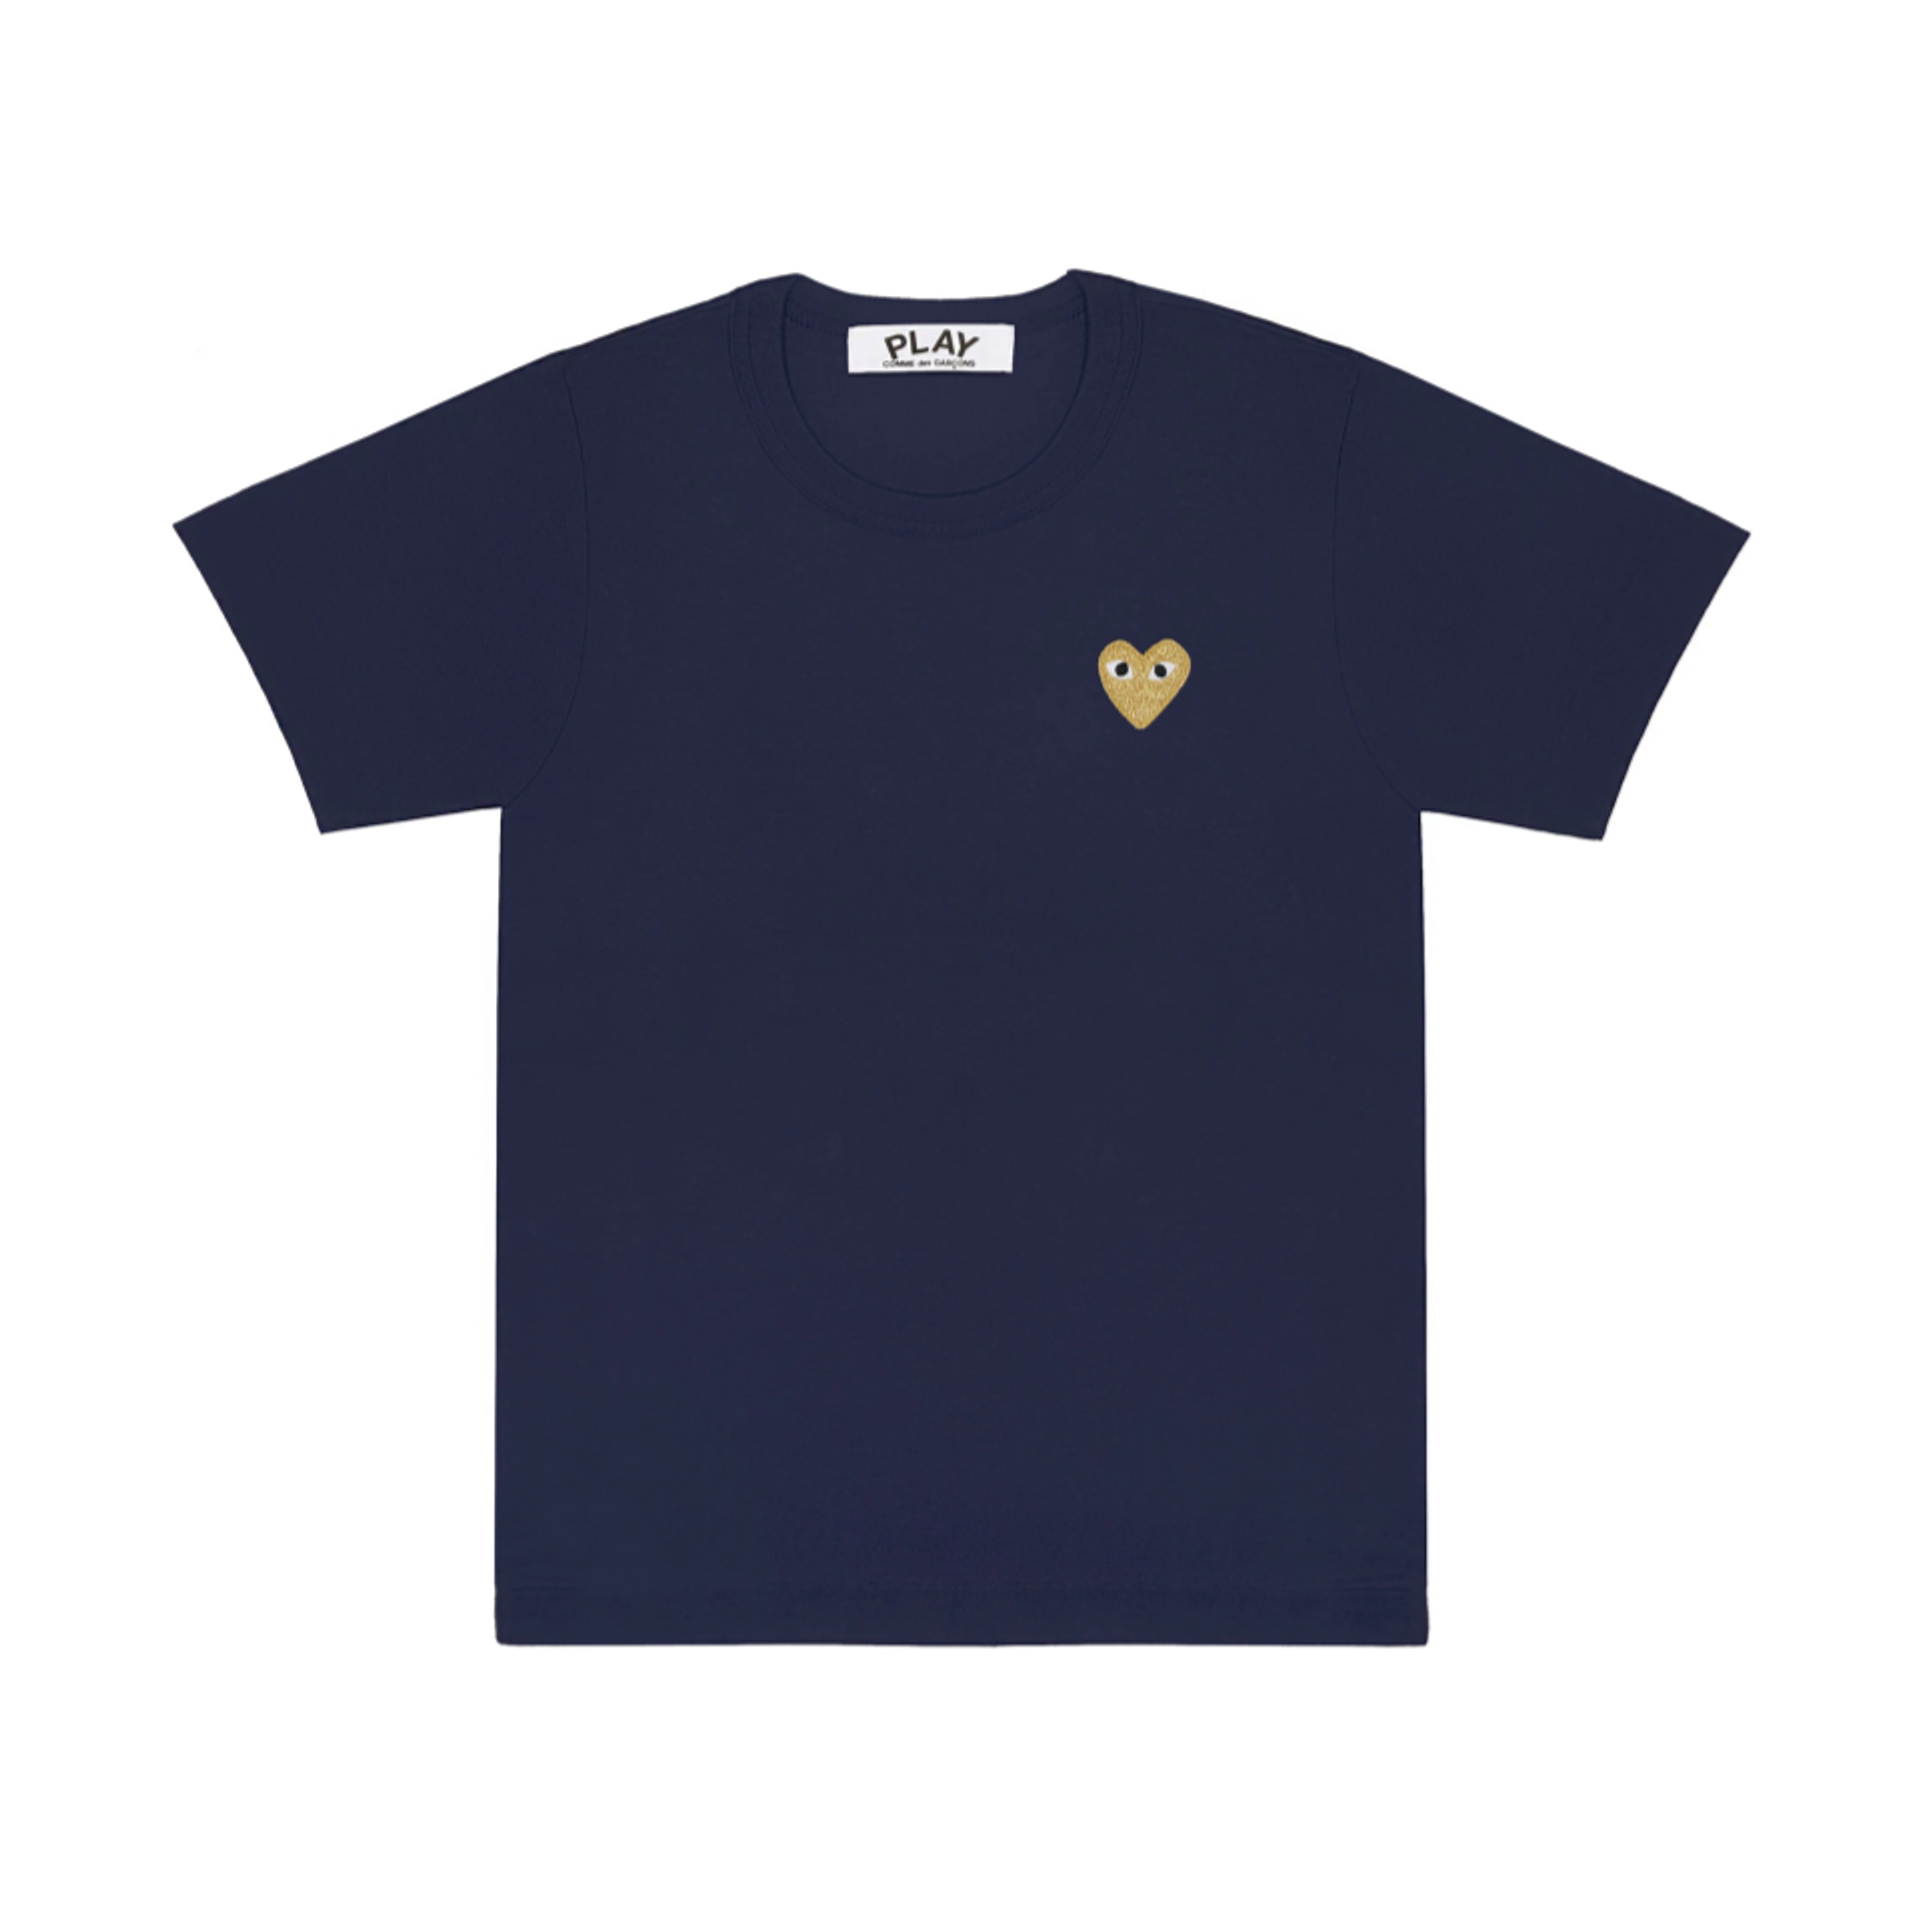 PLAY Gold Heart T-Shirt (Navy) Men's